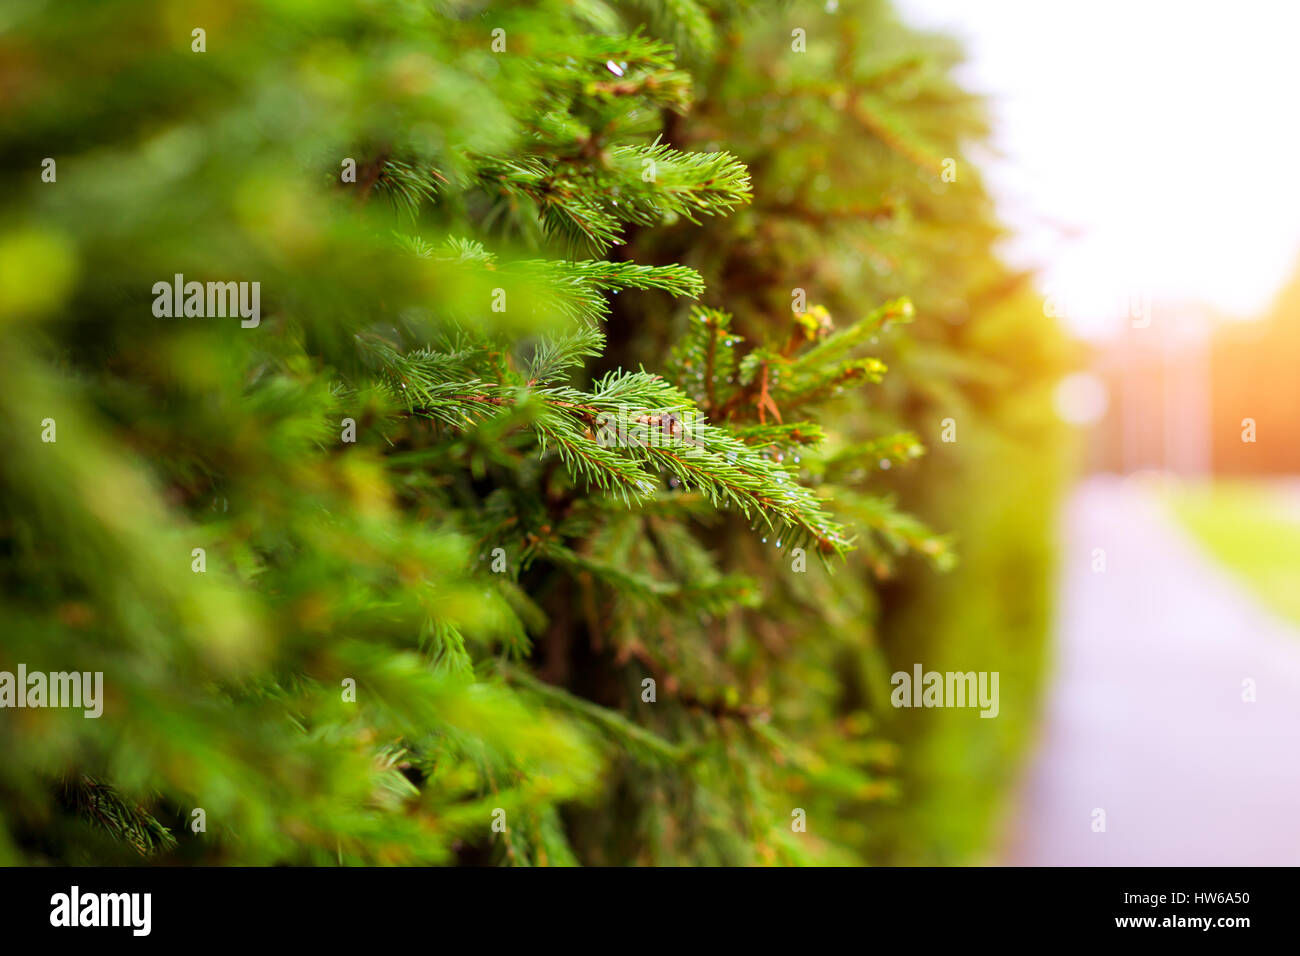 La direction générale de l'épinette verte avec des gouttes d'eau dans le contexte d'une plante de couverture de conifères. Tallinn, États baltes, l'Estonie. Arrière-plan flou avec b Banque D'Images